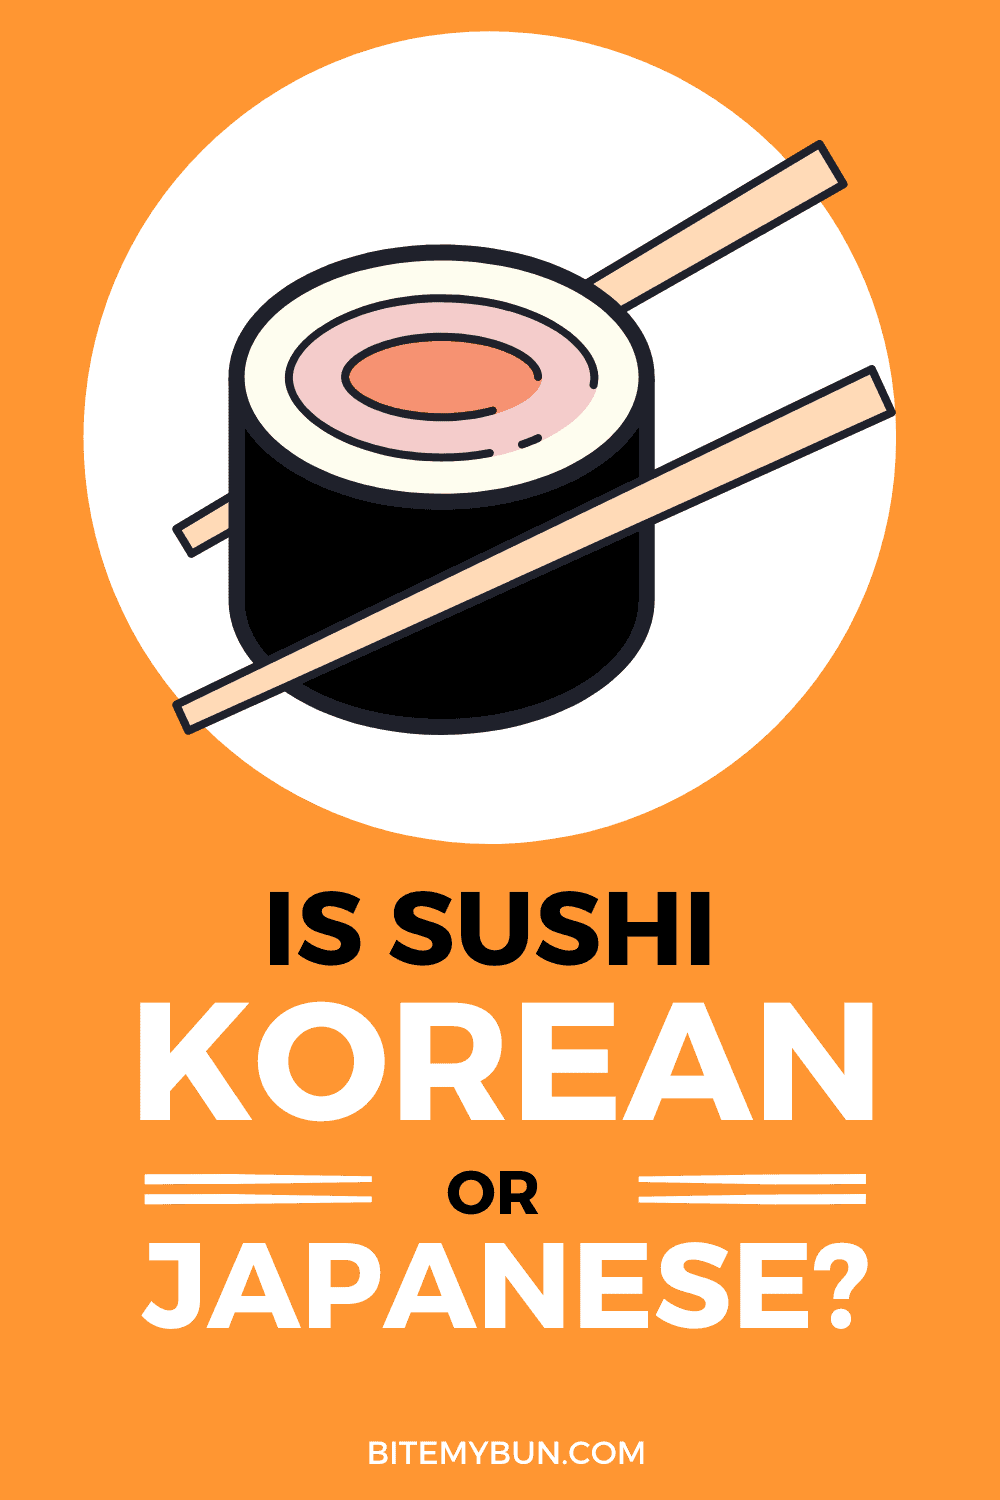 ¿El sushi es coreano o japonés?